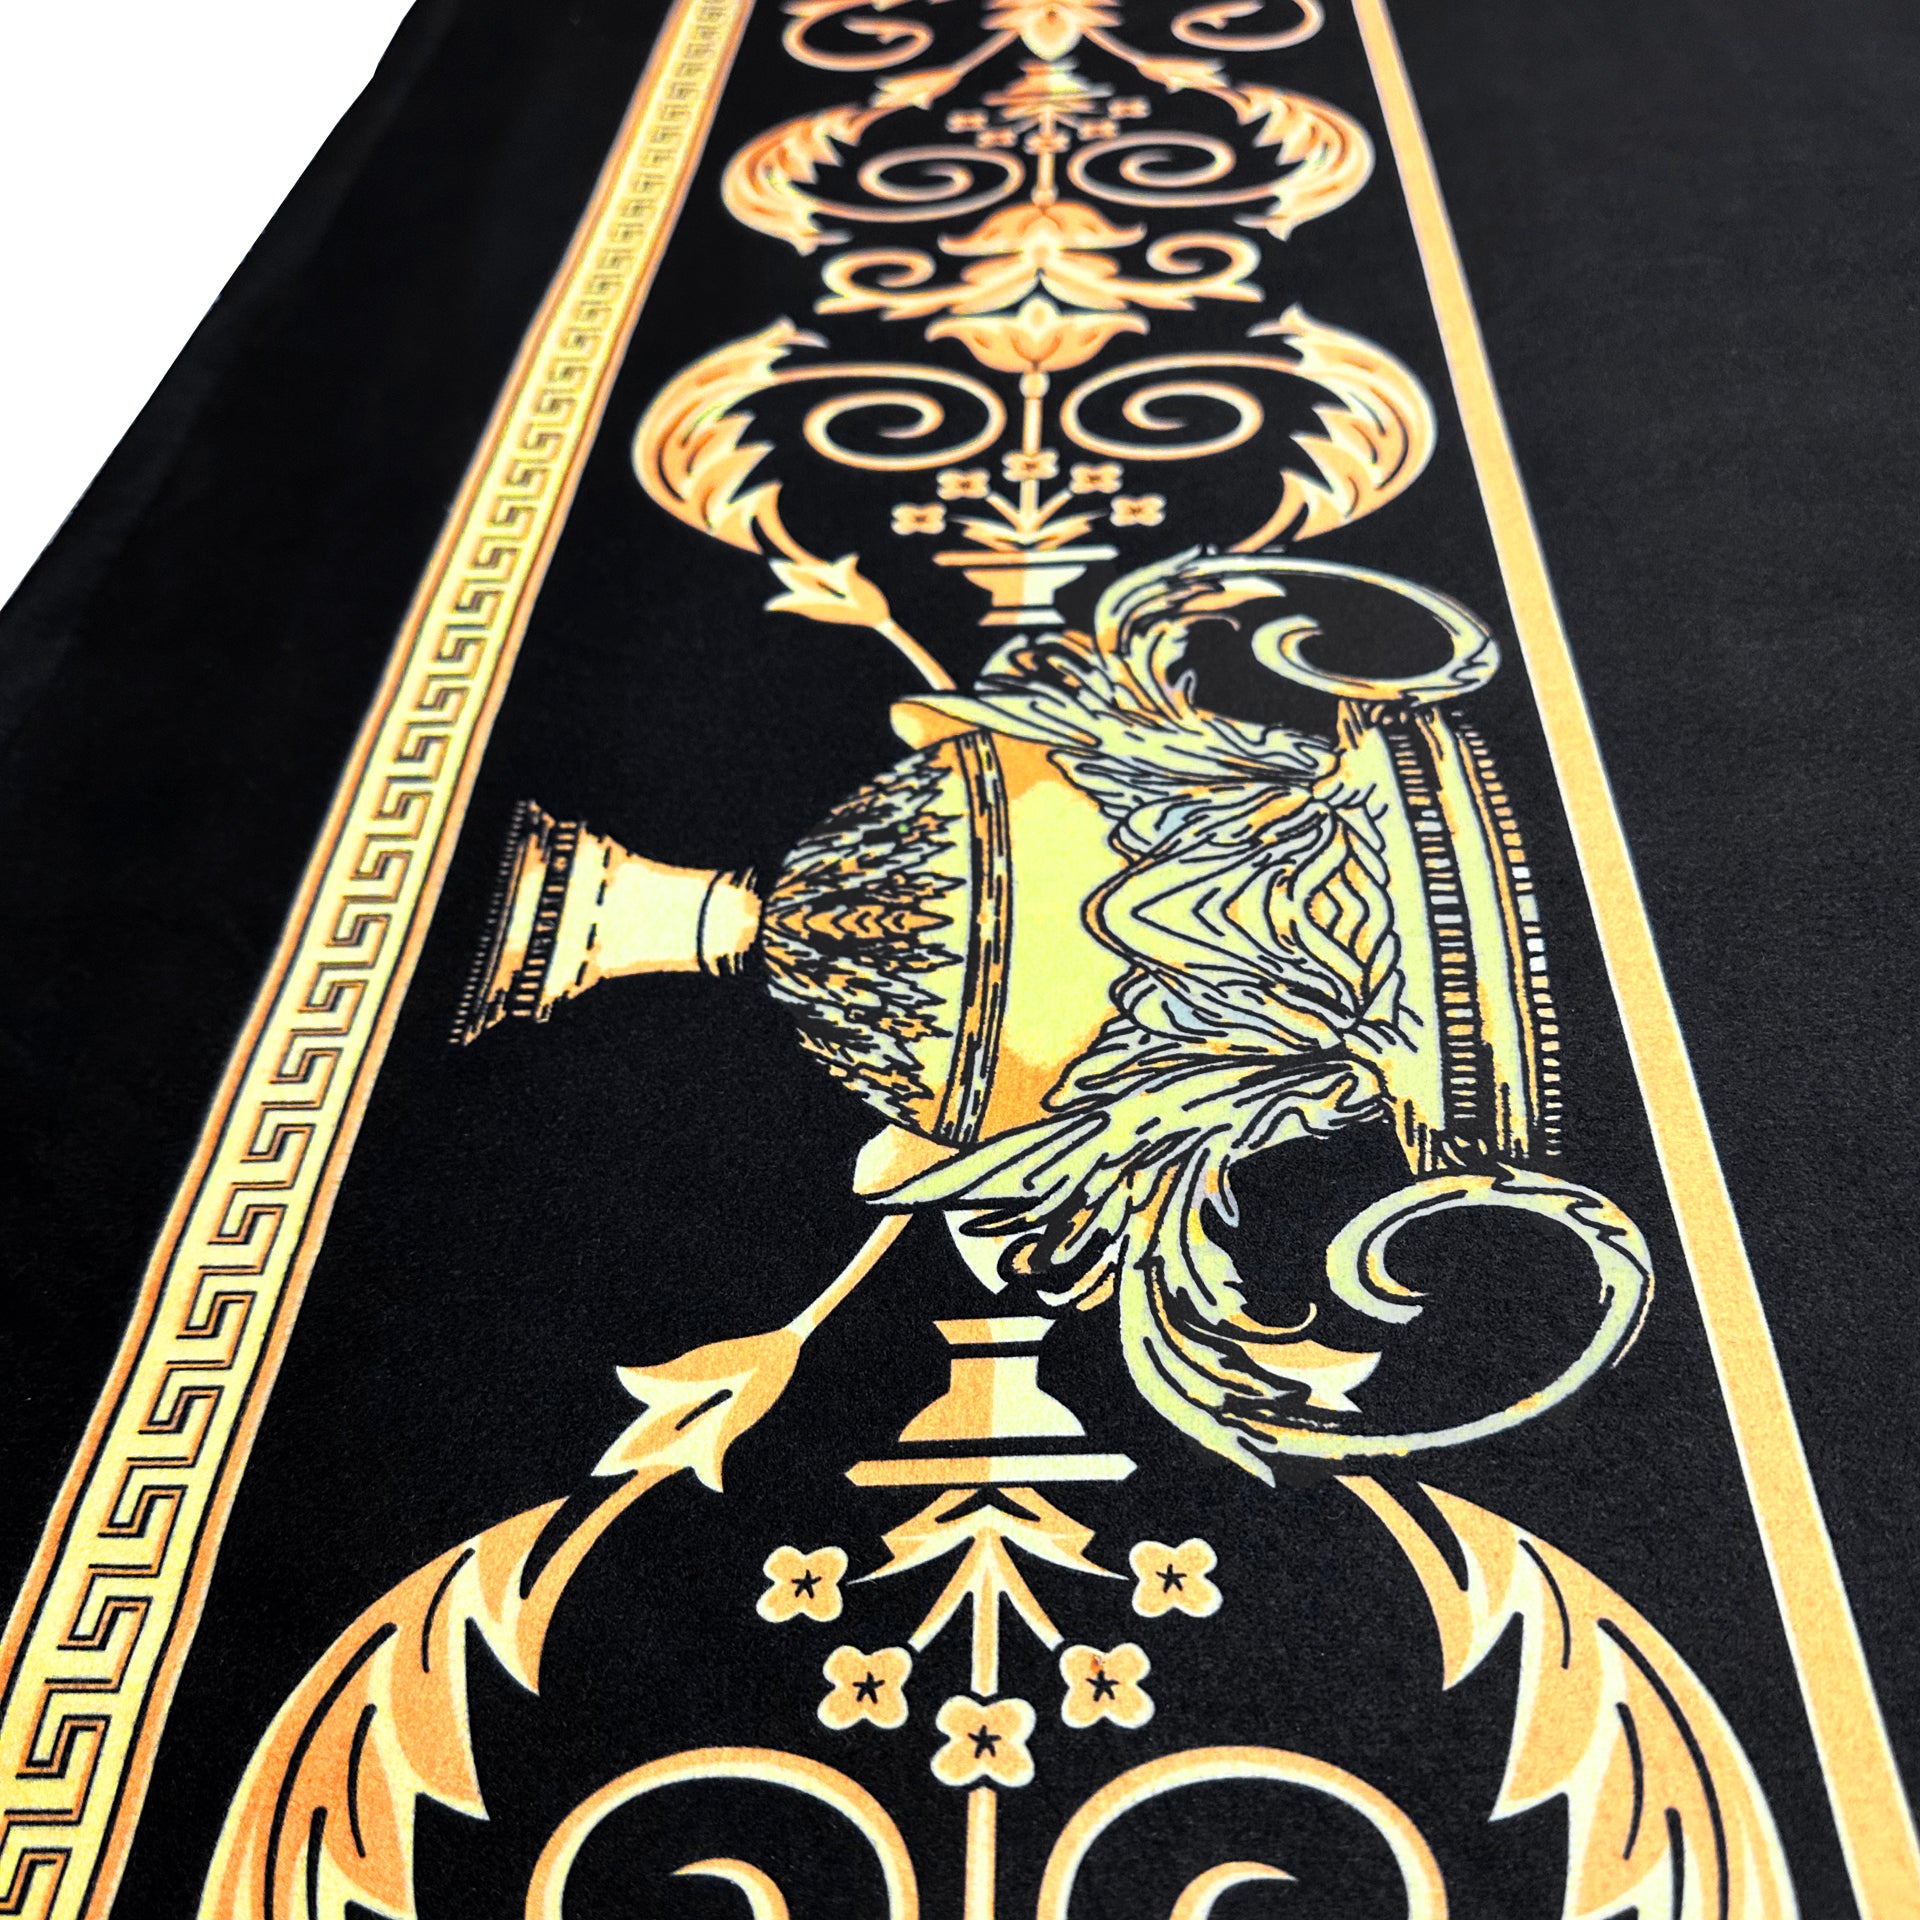 Exklusive Sherpa Decke mit Amphore Motiv in schwarz gold - 150 x 200 - warm & kuschelweich